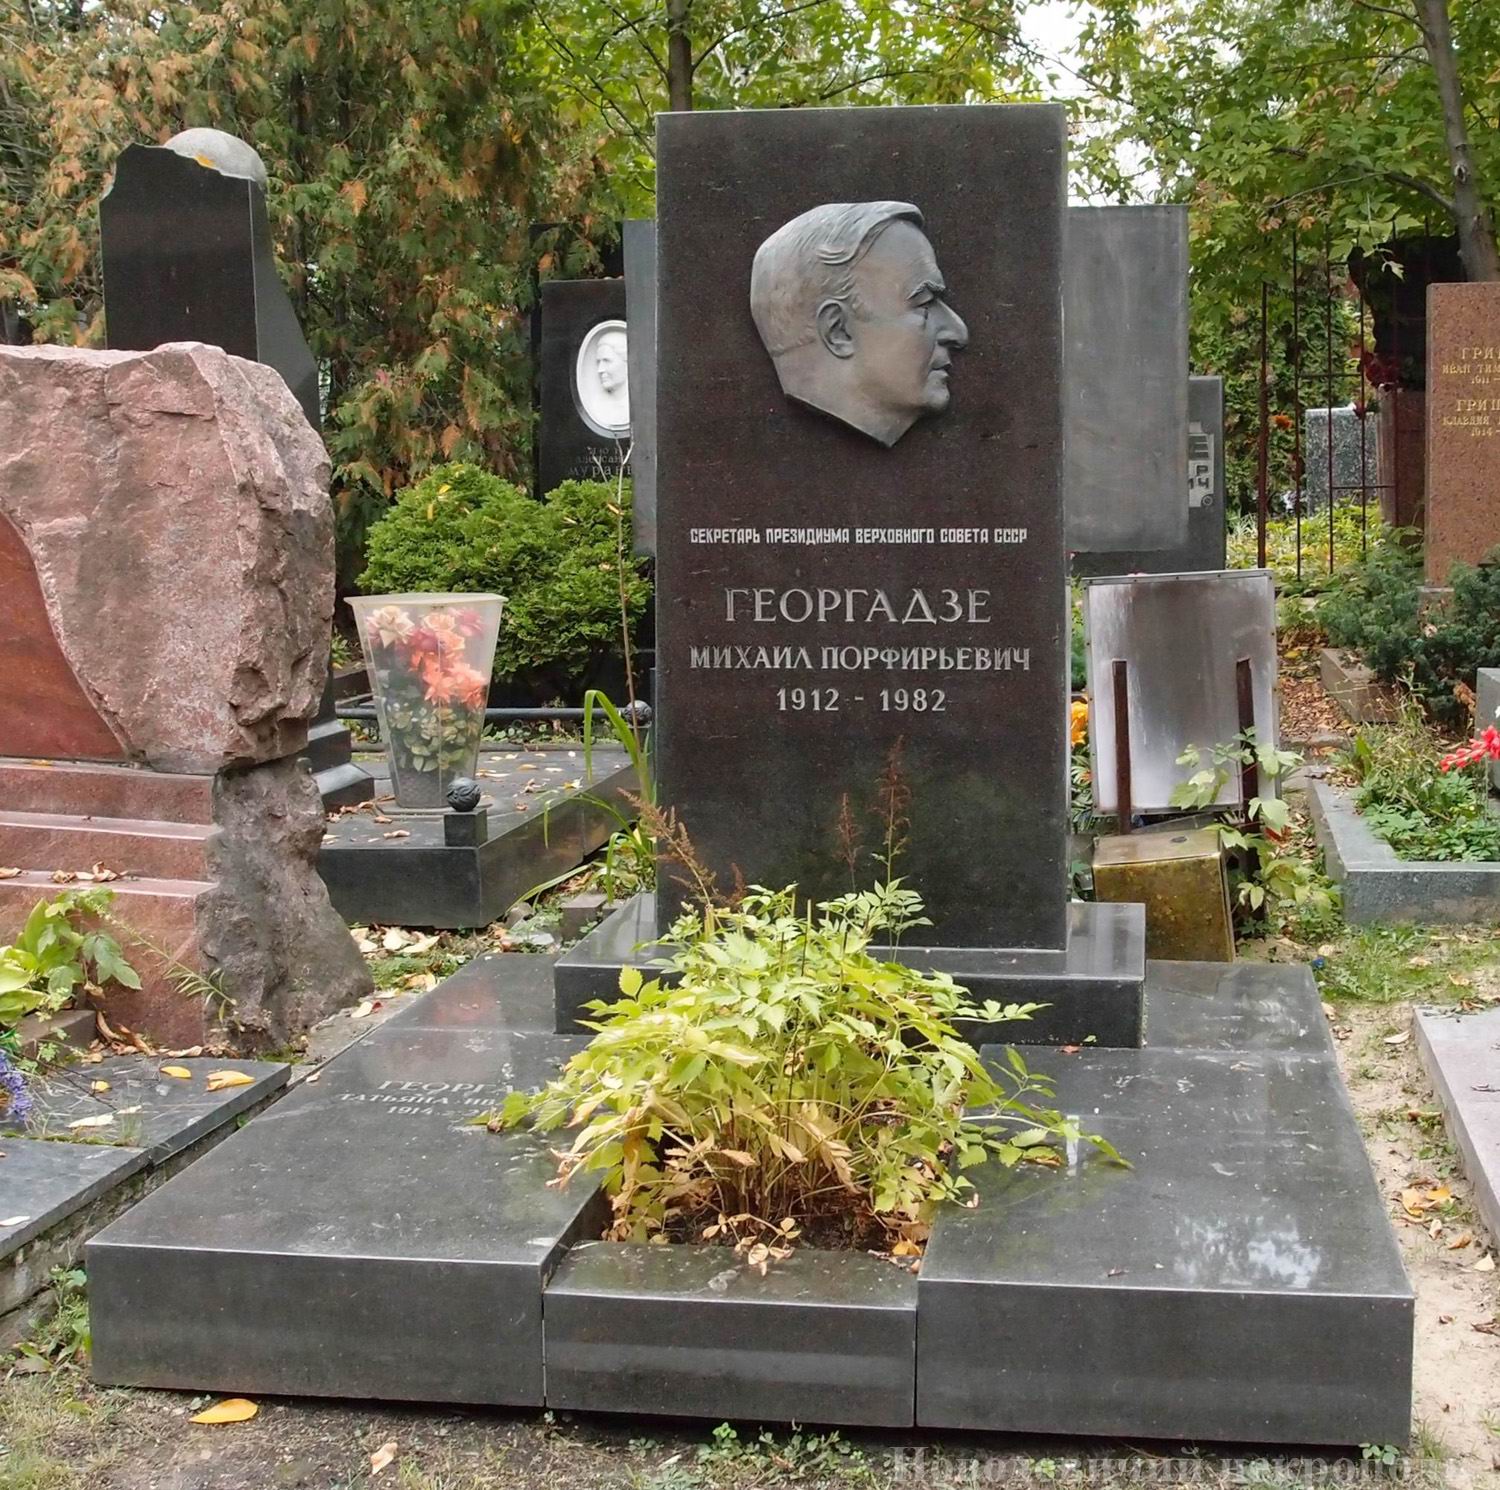 Памятник на могиле Георгадзе М.П. (1912-1982), ск. О.Комов, арх. Ю.Тихонов, на Новодевичьем кладбище (10-1-8).